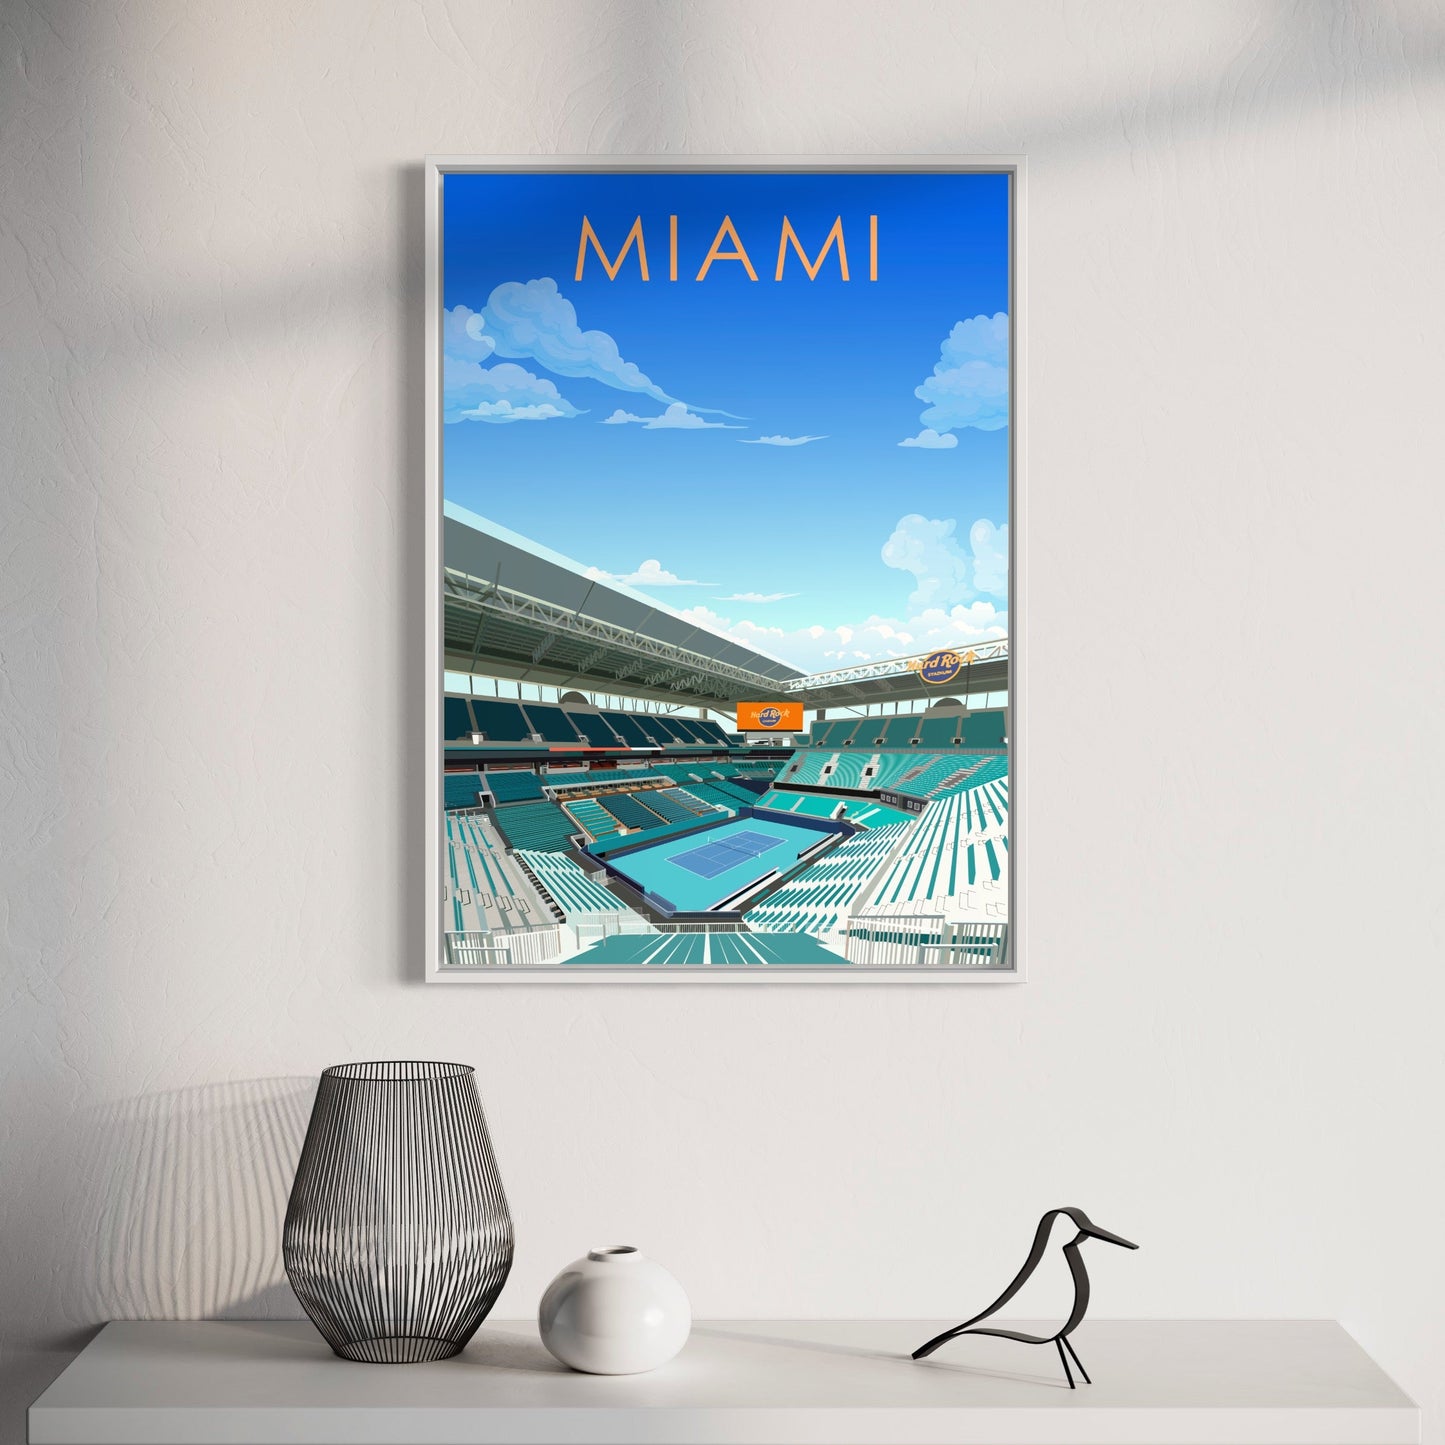 Miami Open ATP/WTA Tennis Stadium Poster